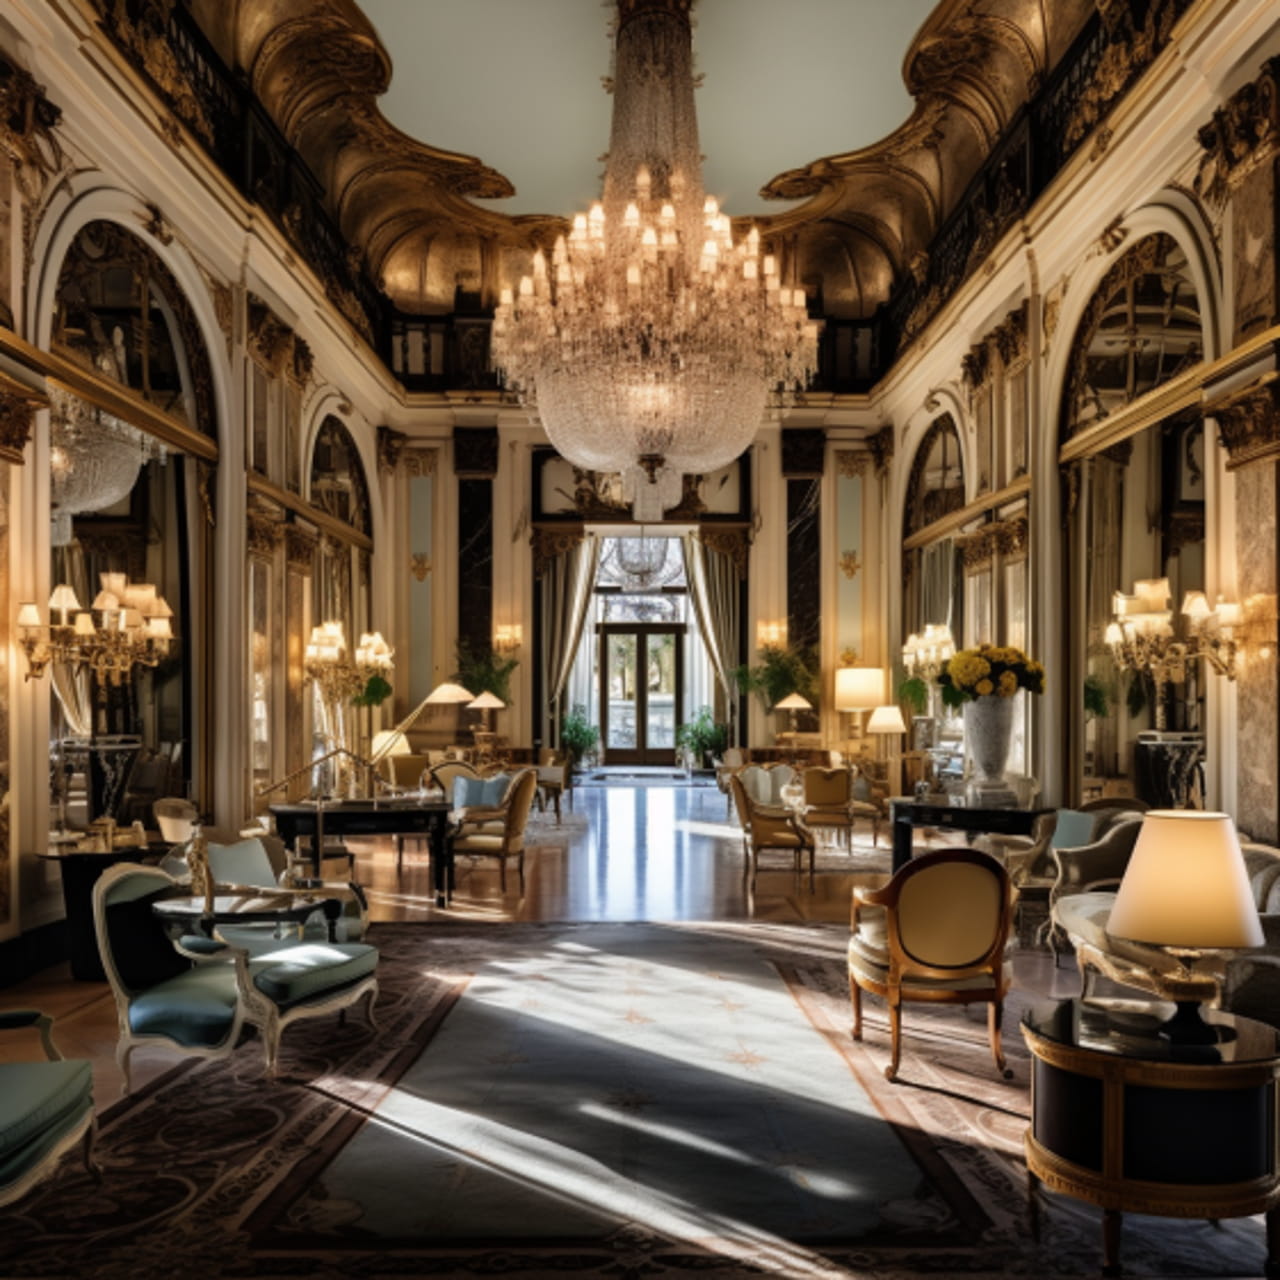 Hôtels de Luxe : Services et Détails qui Font la Différence